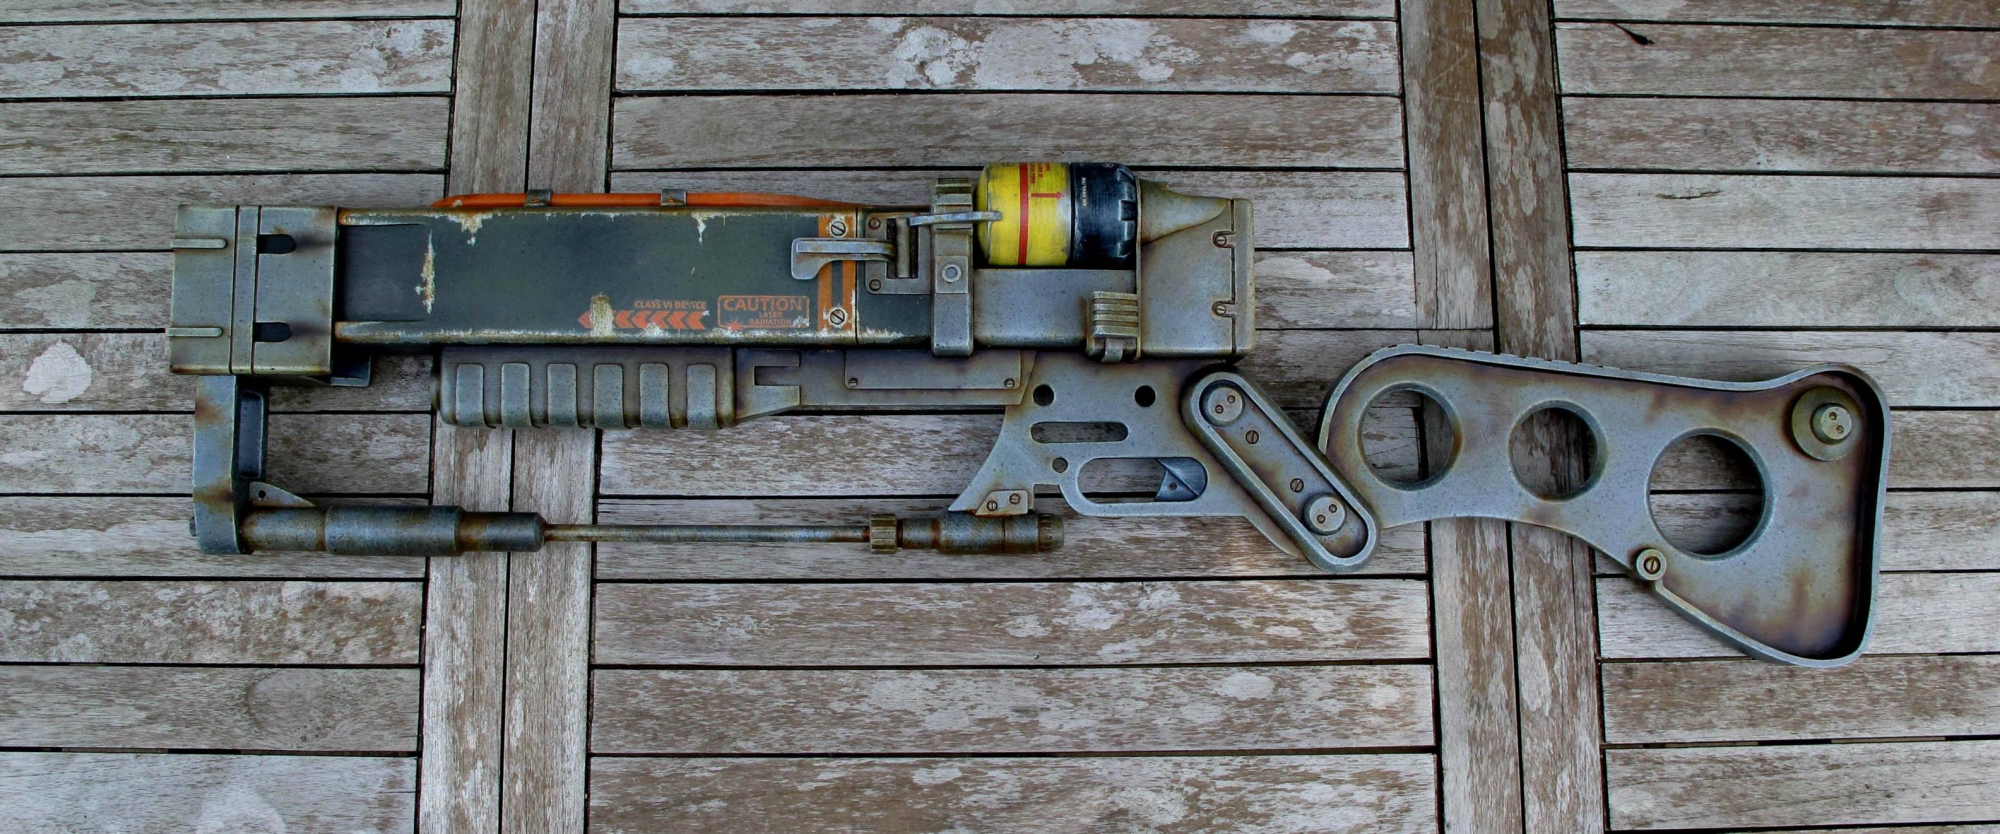 лазерная винтовка из fallout 4 фото 2